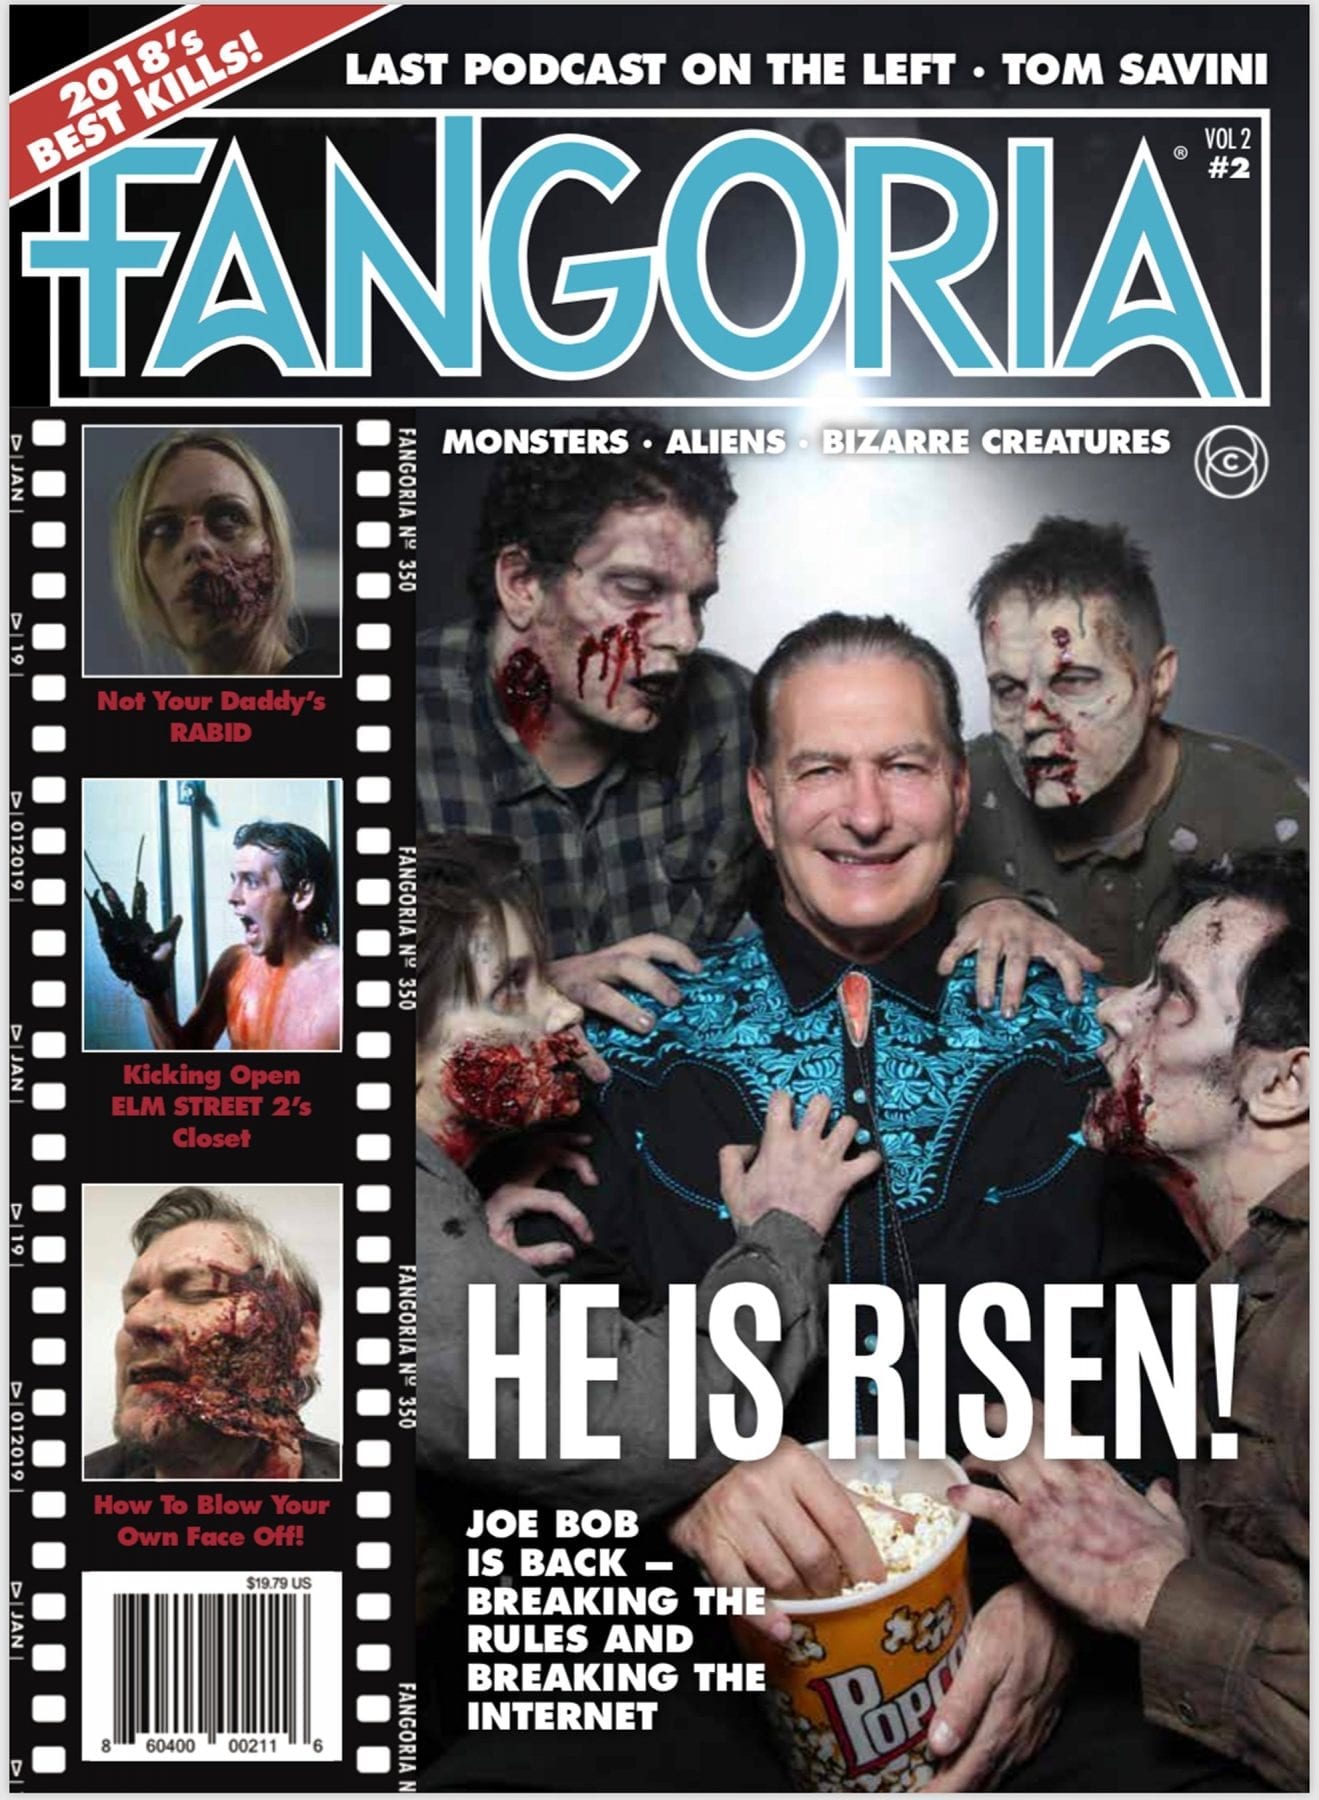 Joe Bob Briggs on the cover of Fangoria